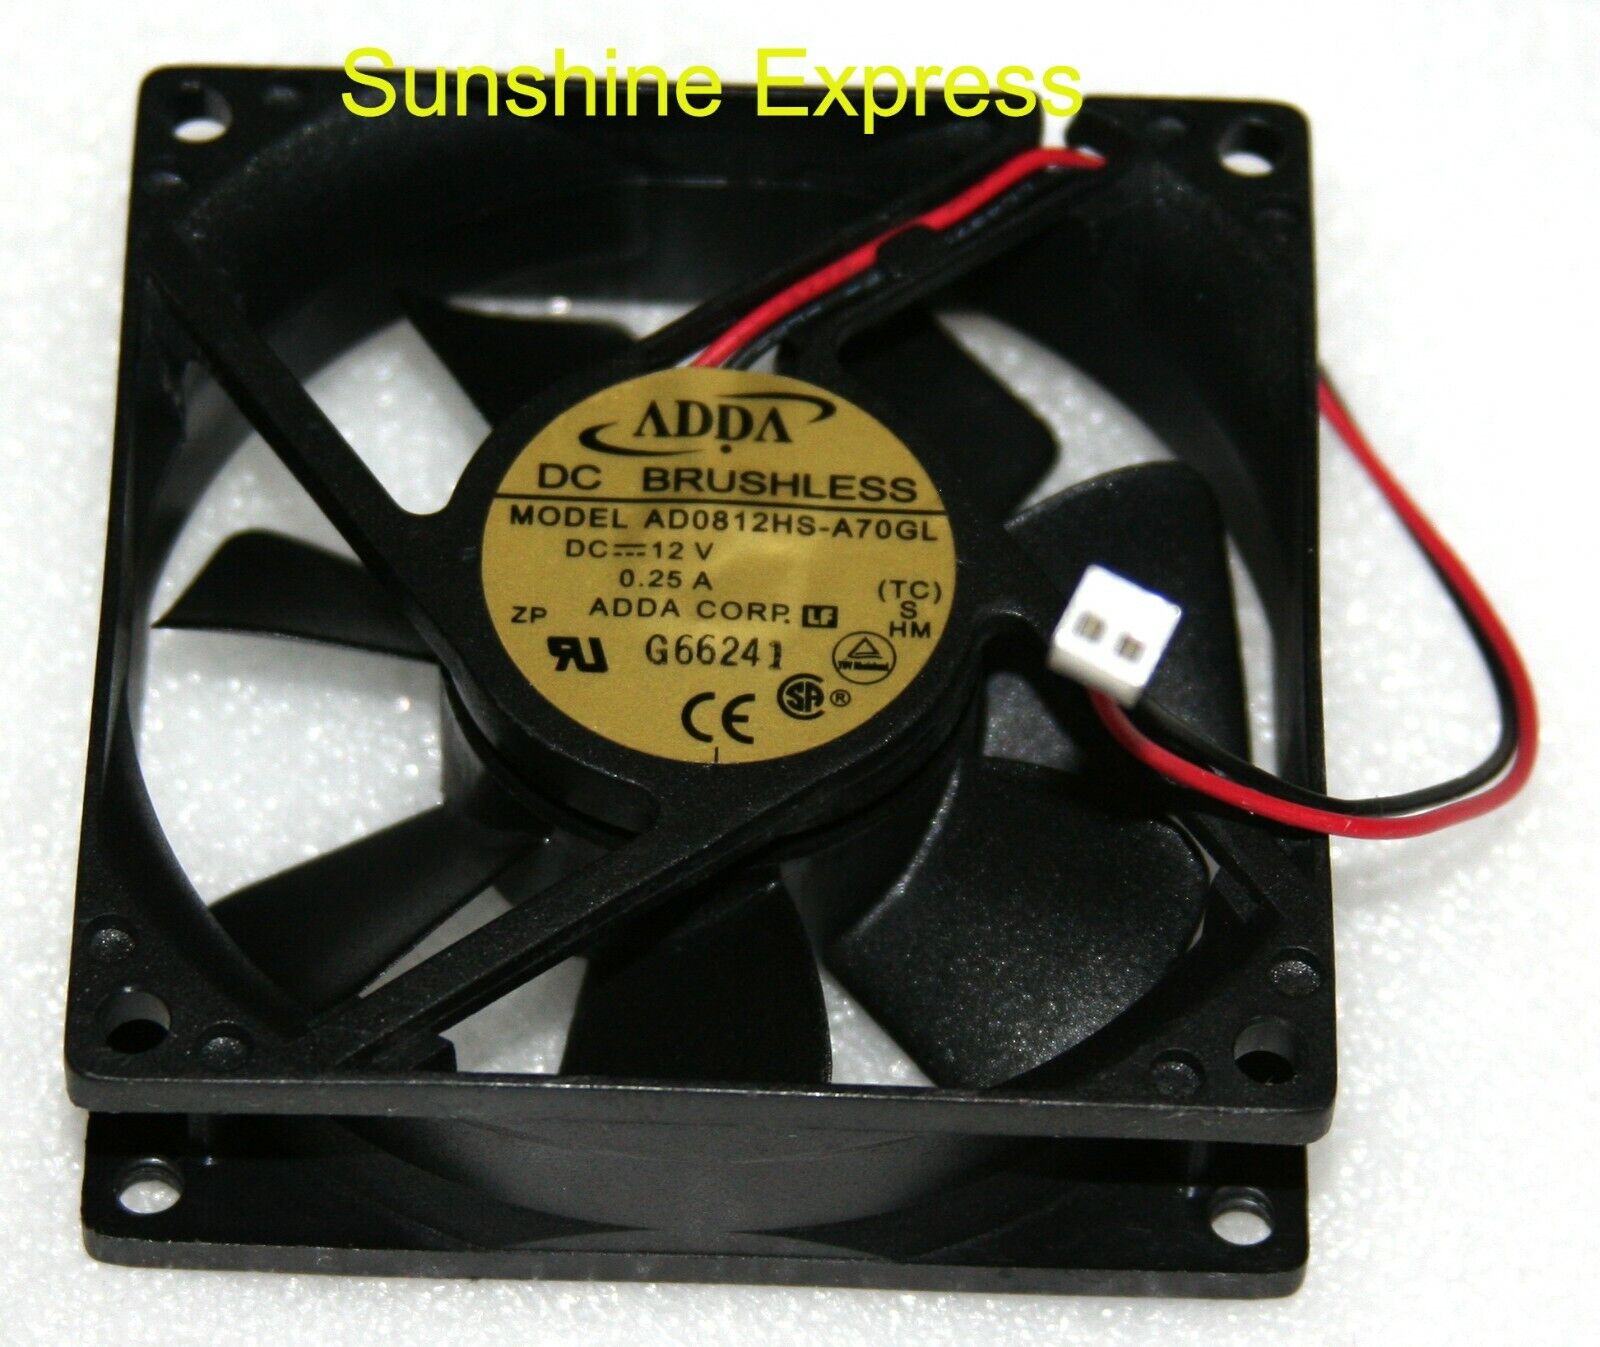 ADDA Cooling Fan AD0812HS-A70GL 80x80x25mm 12v 0.25A w/ 2-pin Connector